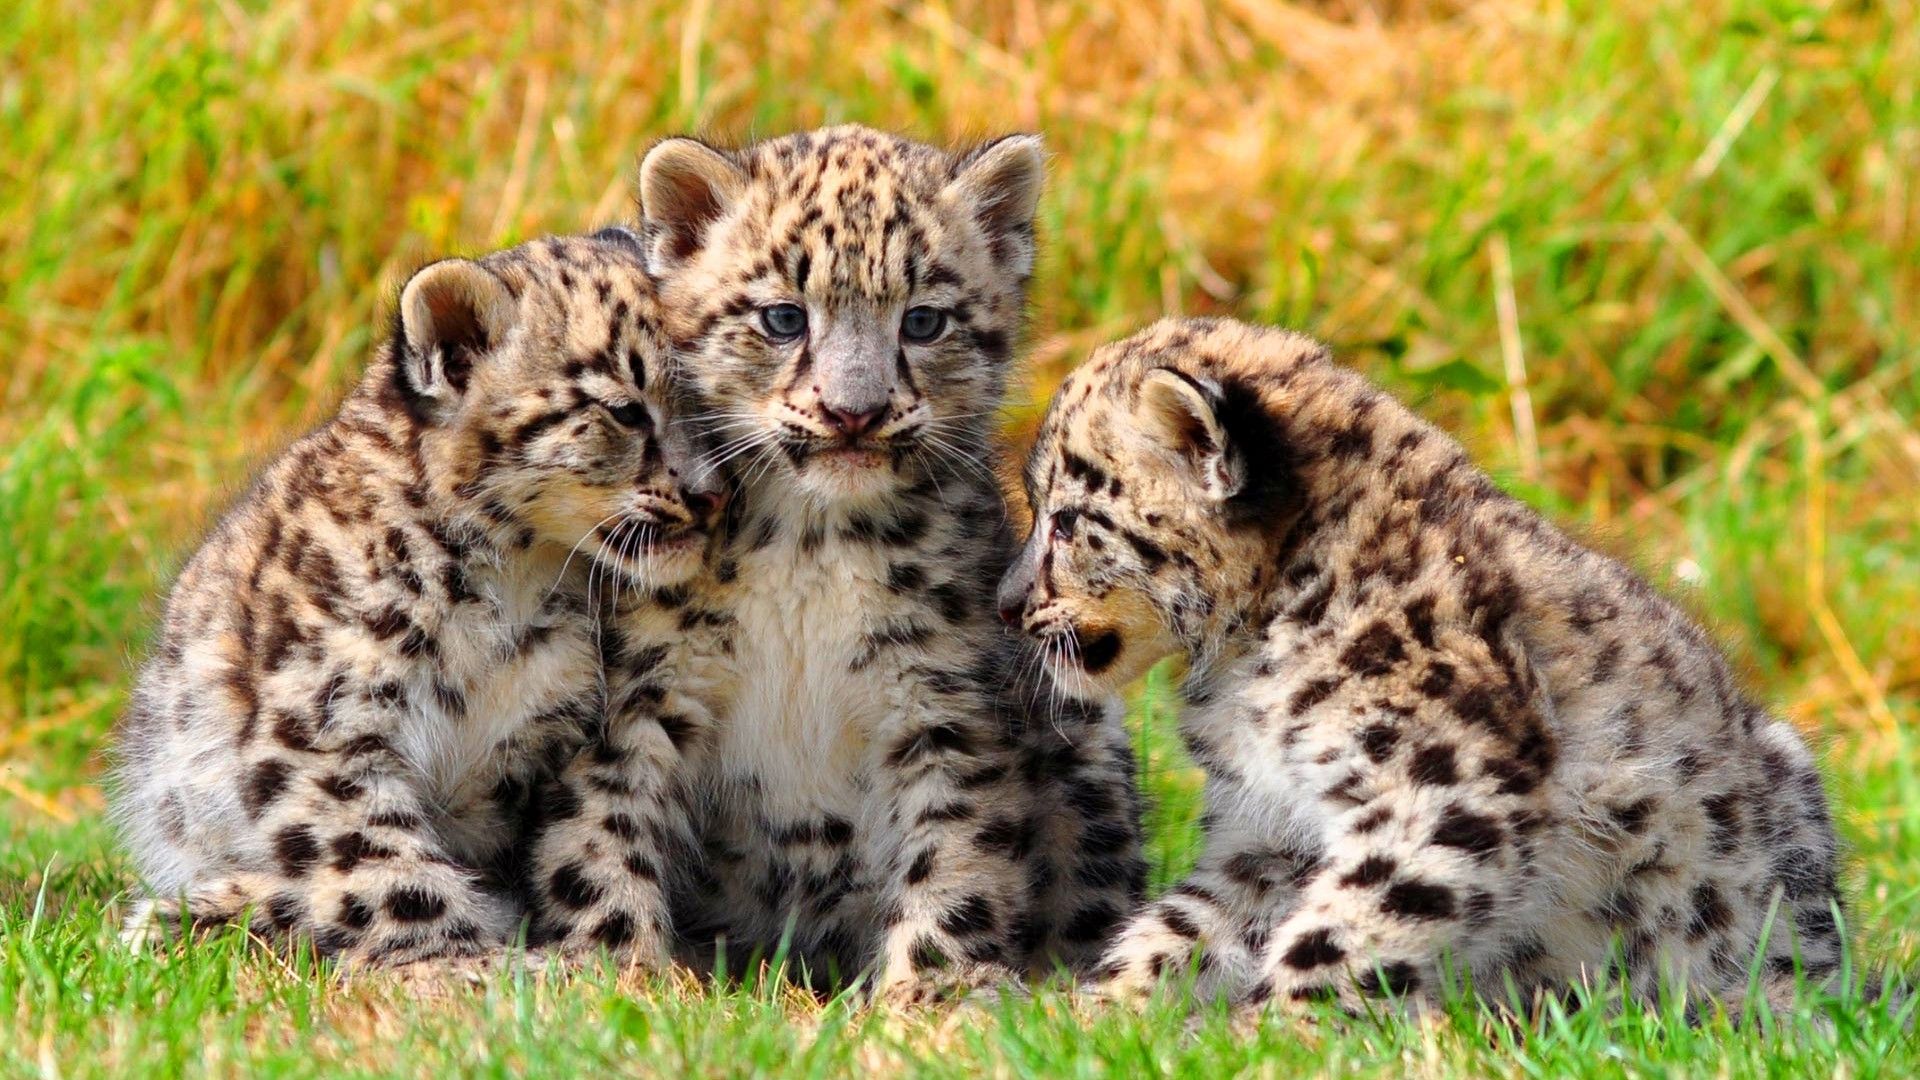 Cute Baby Leopard Wallpaper Free Cute Baby Leopard Background